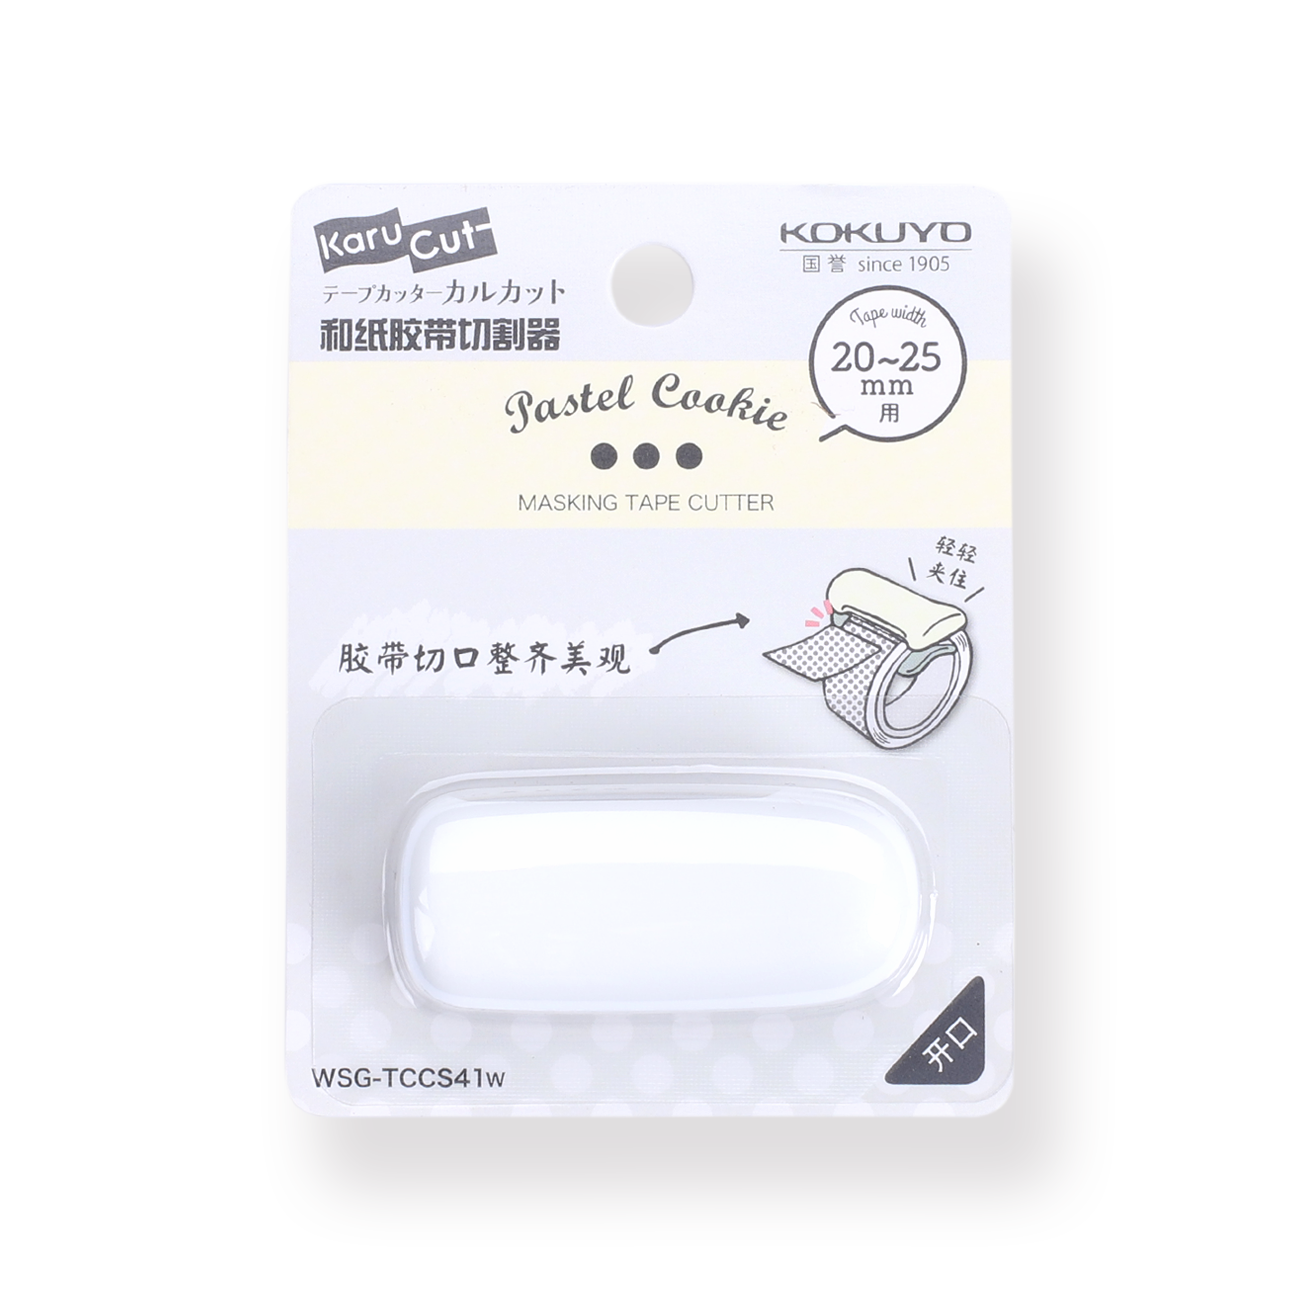 Kokuyo Karu Cut Washi Tape Cutter - White